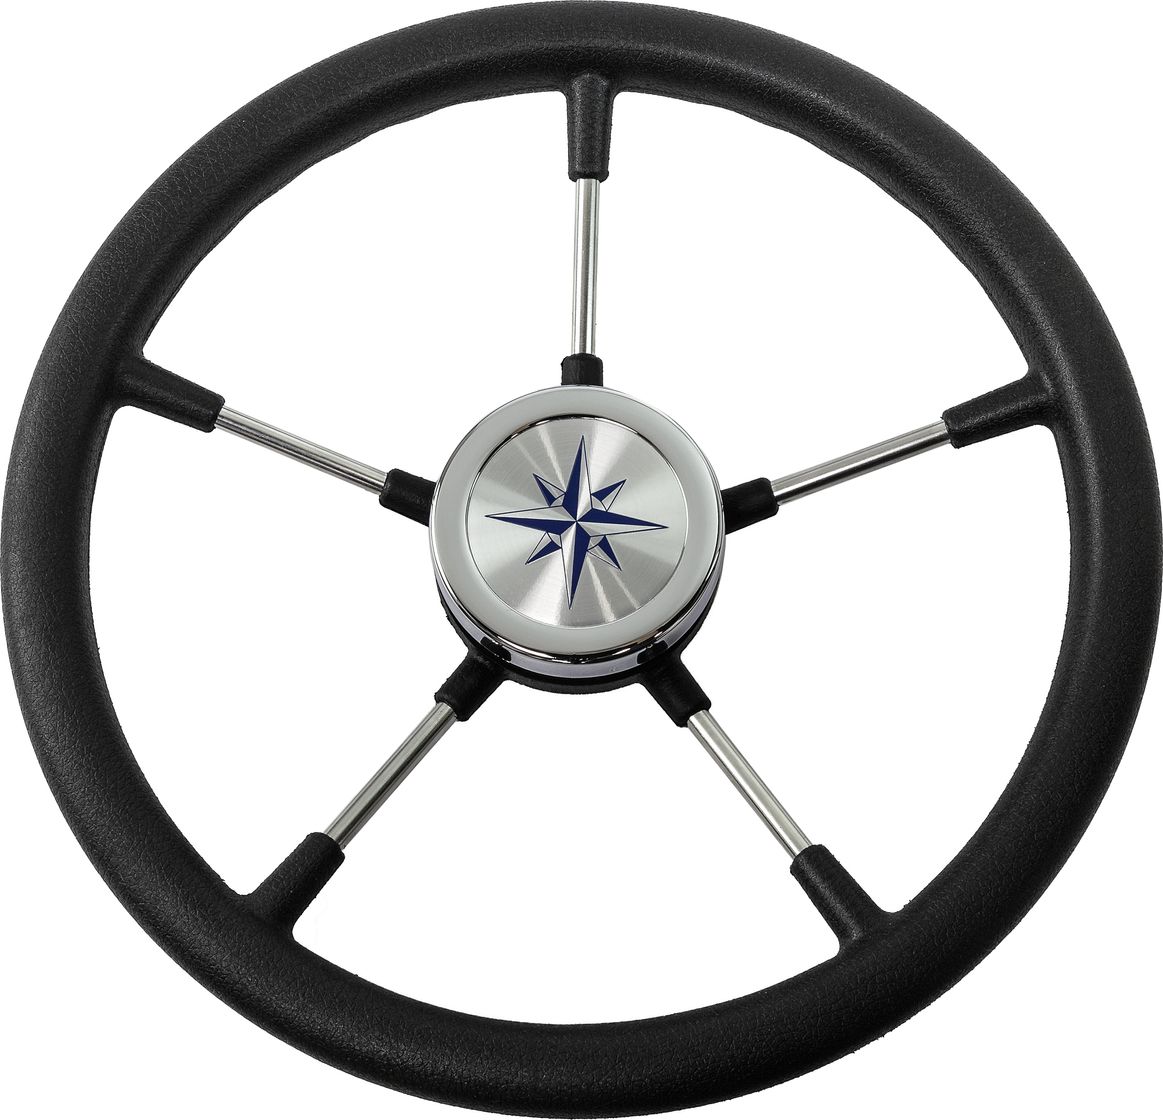 Рулевое колесо RIVA RSL обод черный, спицы серебряные д. 360 мм VN735022-01 рулевое колесо leader wood деревянный обод серебряные спицы д 360 мм vn7360 33